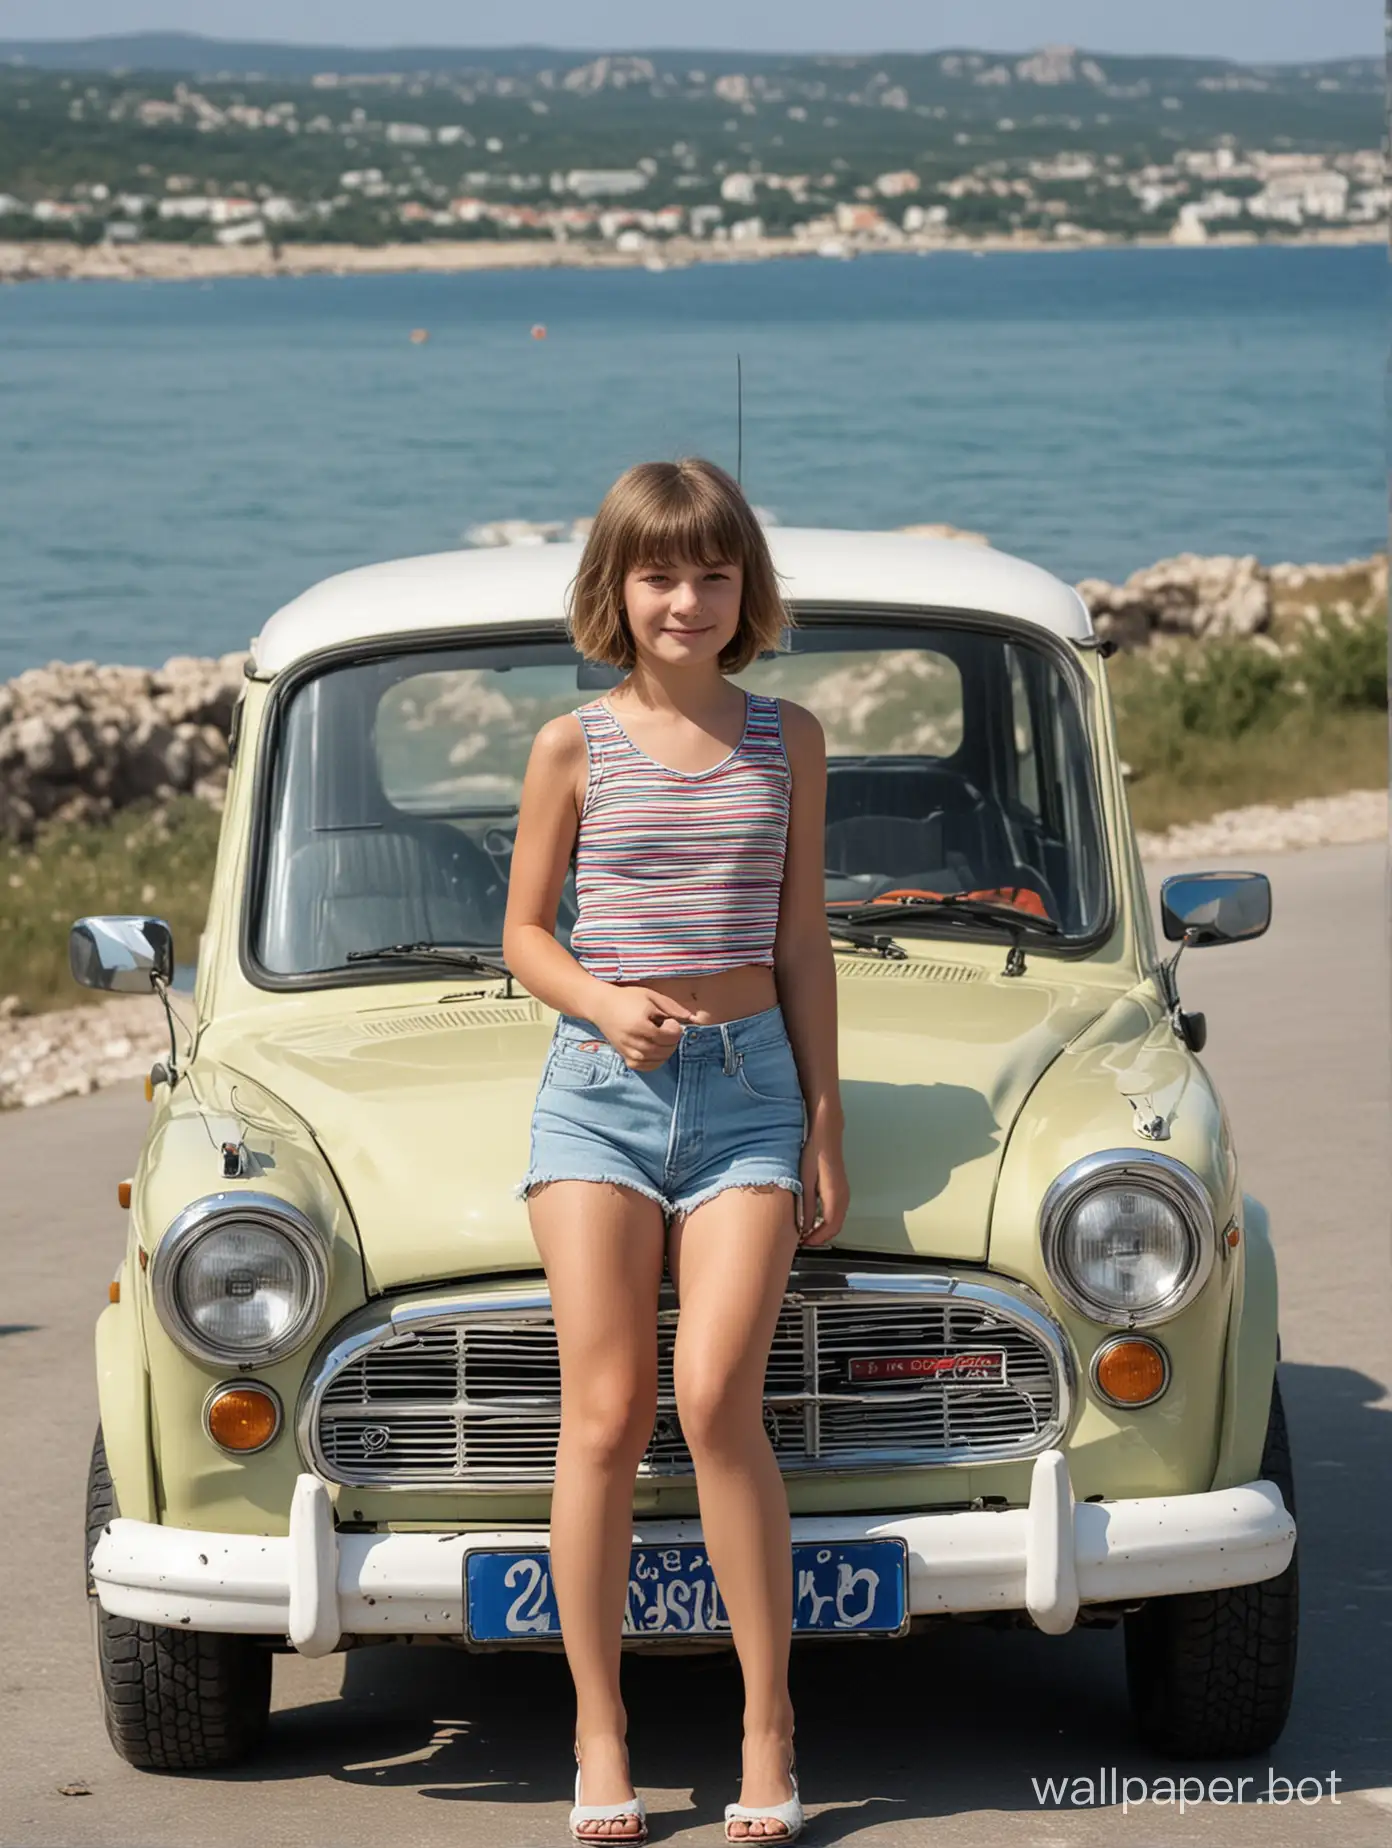 Крым, автомобиль для хиппи "Москвич", вид на море, девочка 11 лет с каре в шортиках